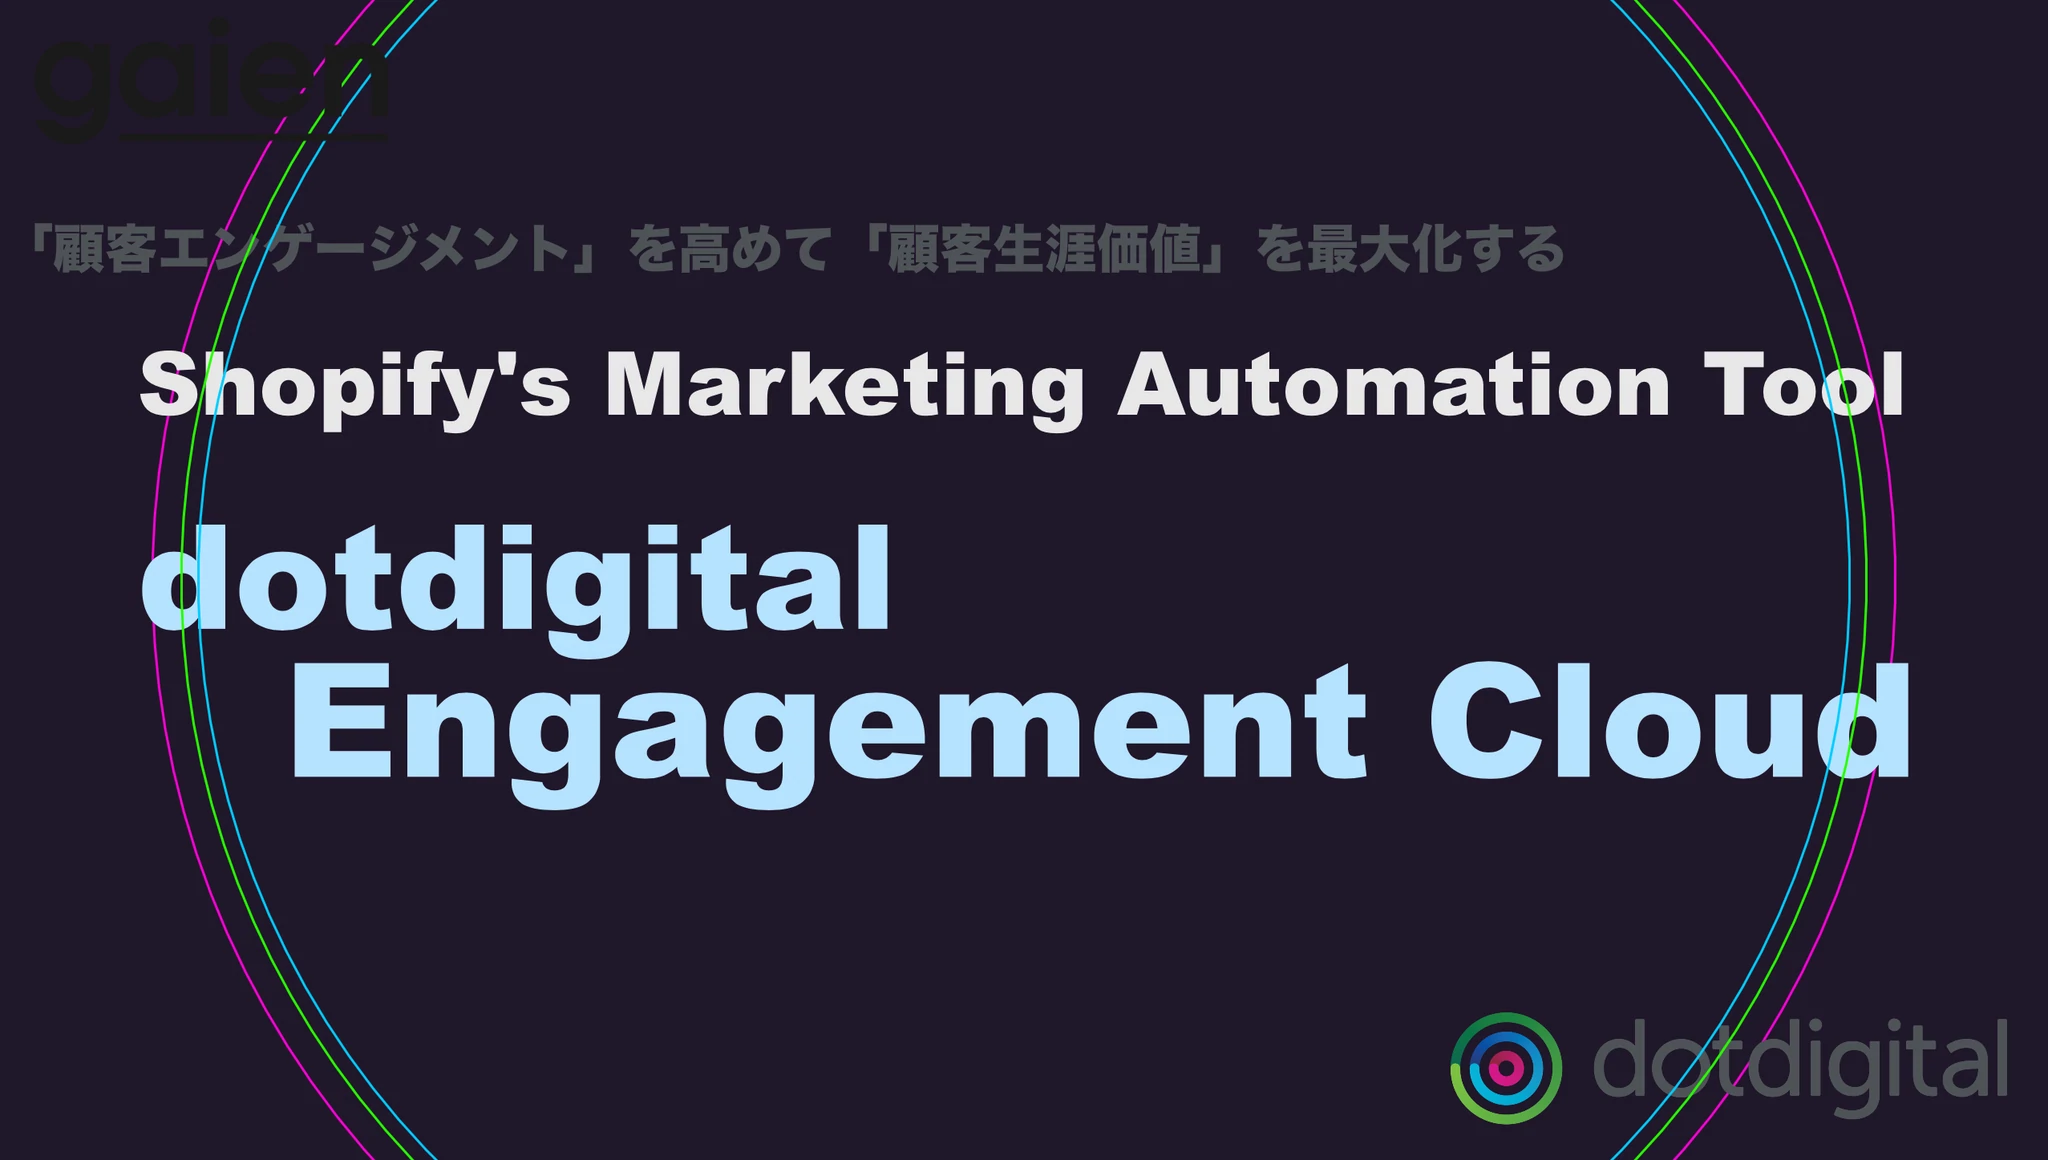 【日本語対応】ShopifyのMAツール「dotdigital Engagement Cloud」で顧客エンゲージメントを高める